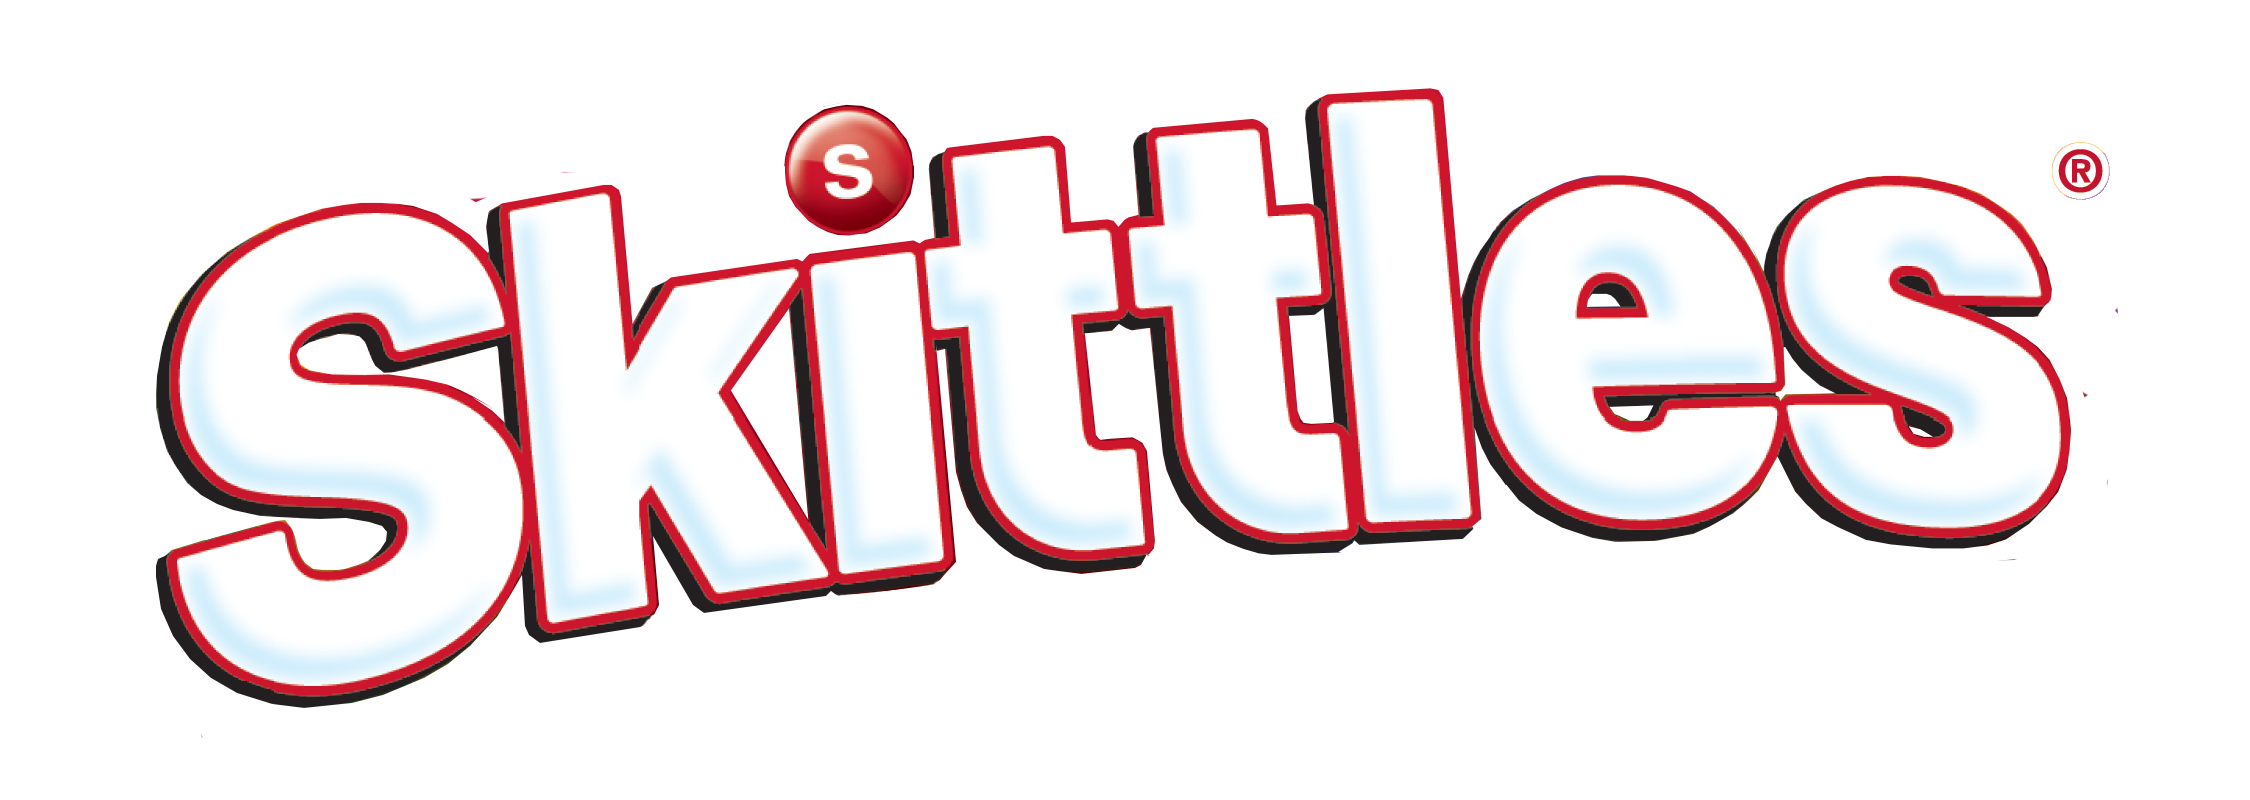 Skittles ملف شفافة